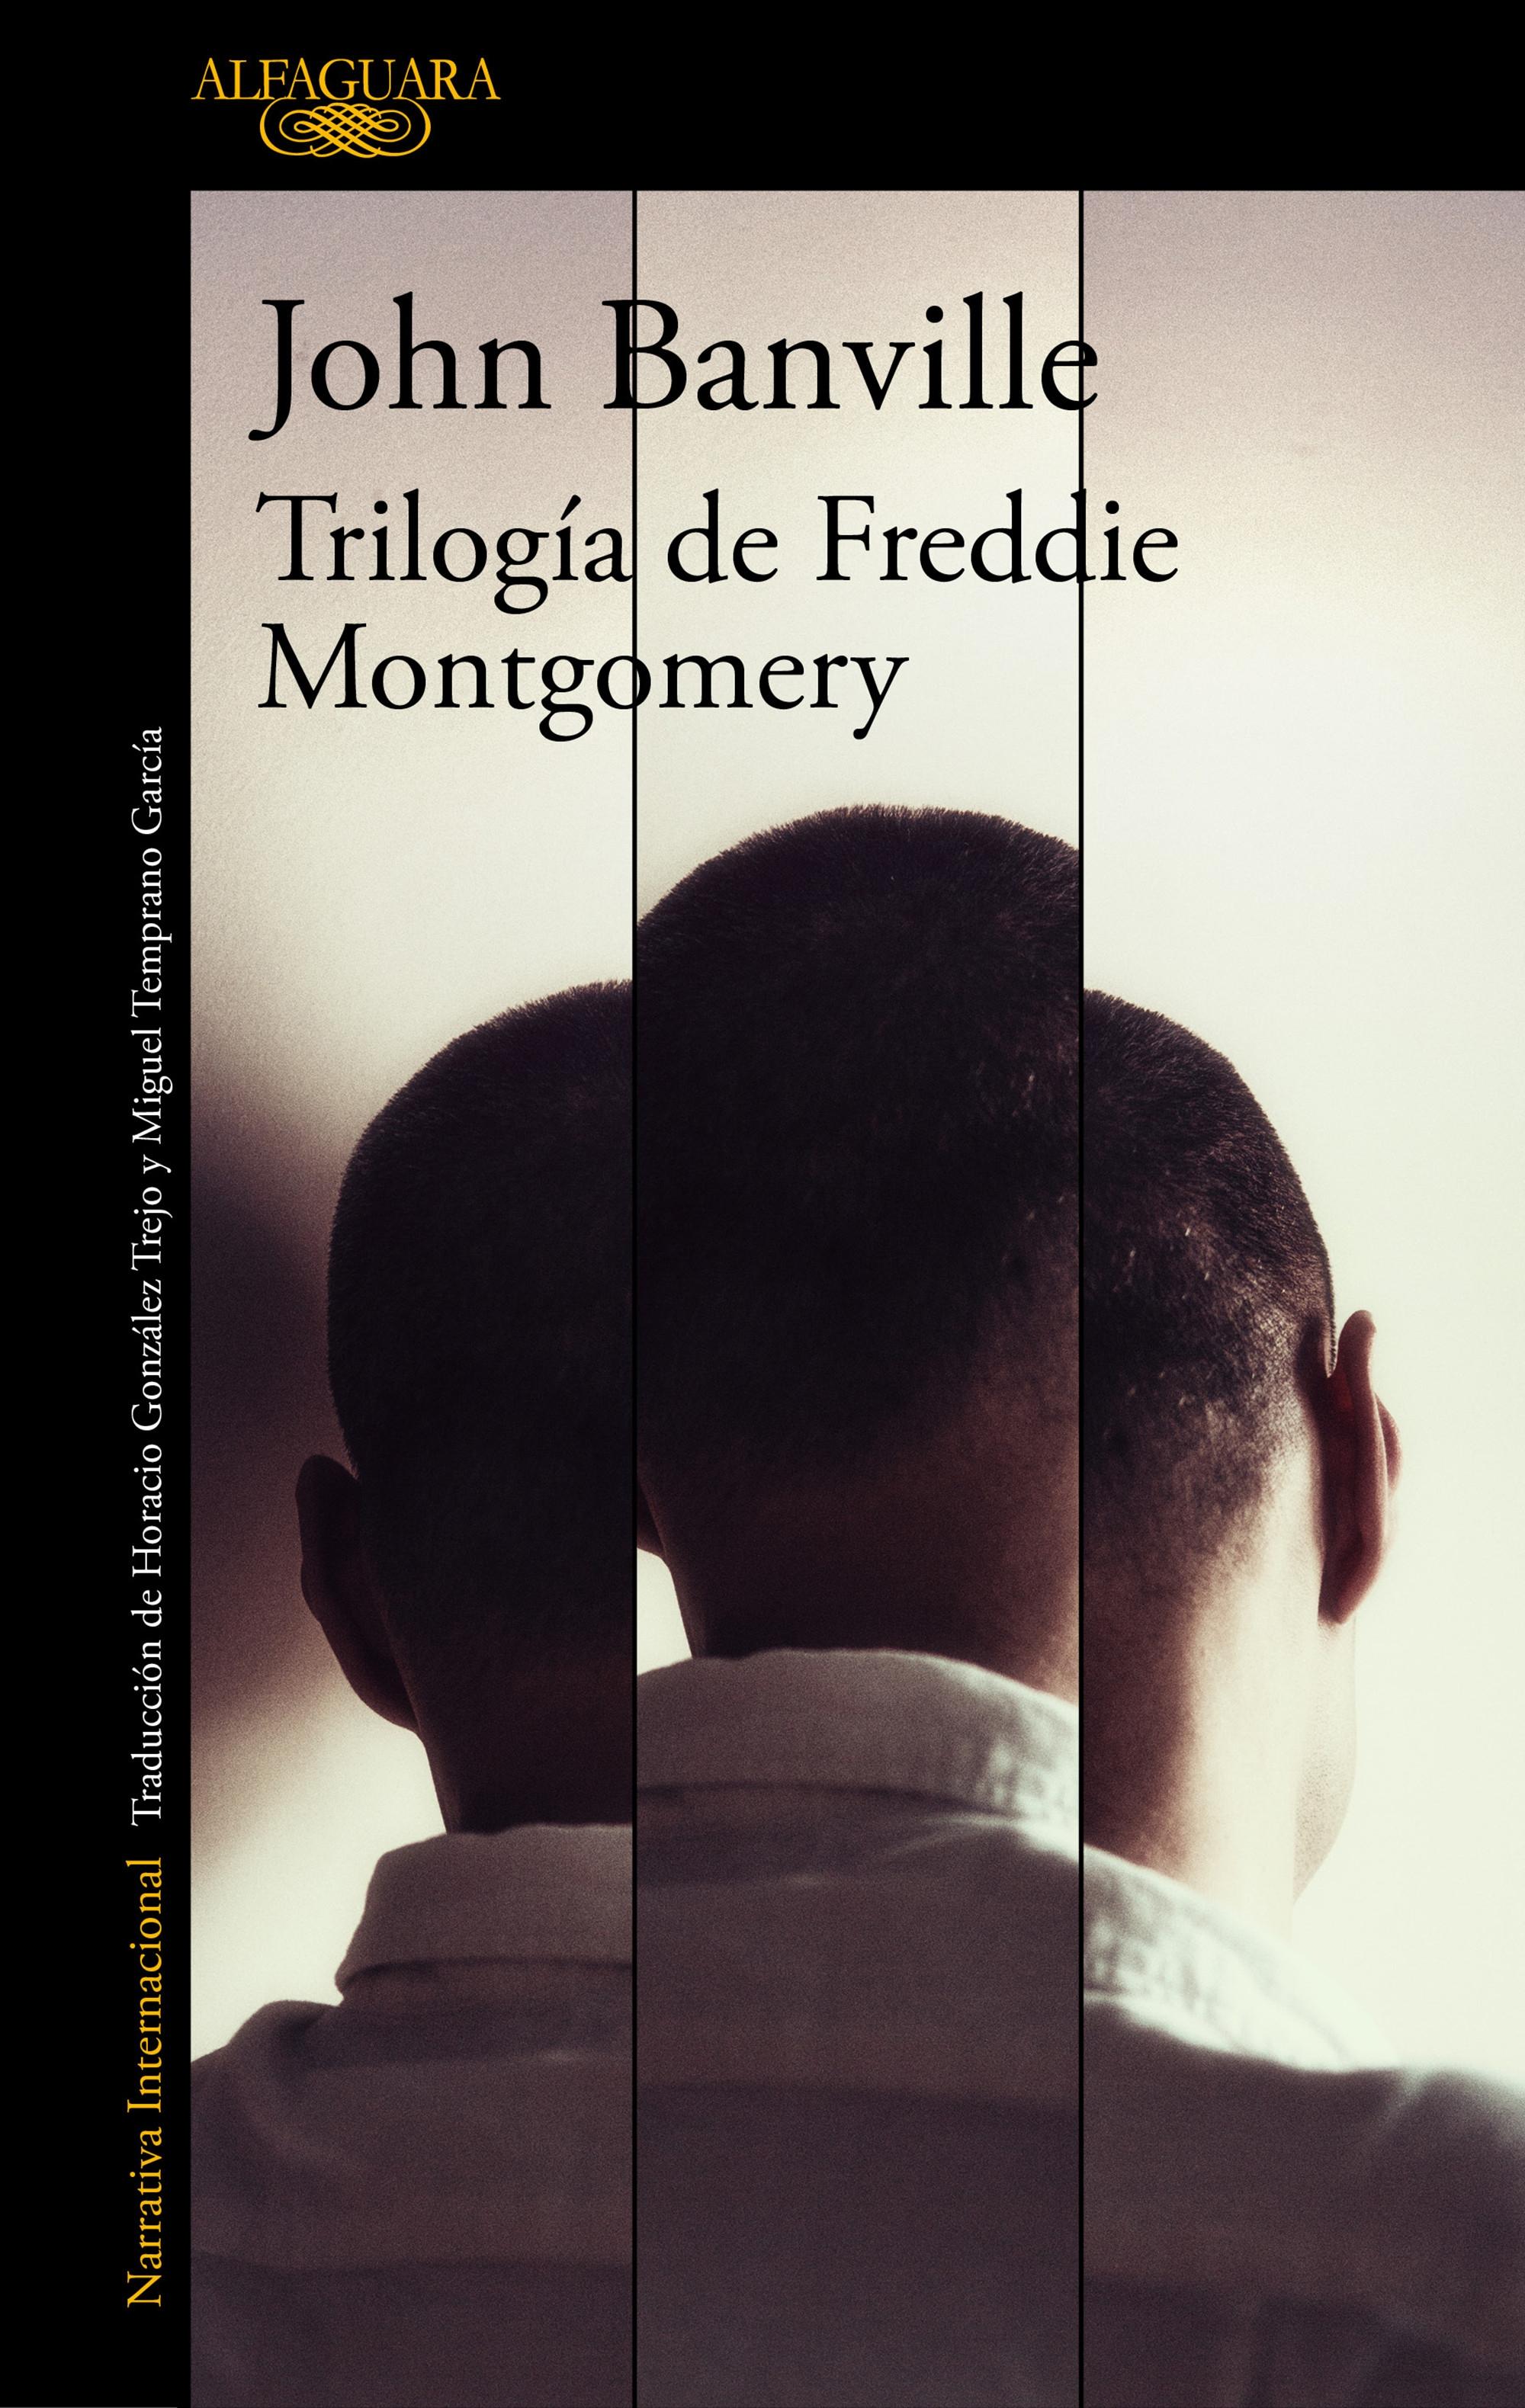 Trilogía de Freddie Montgomery "El libro de las pruebas / Fantasmas / Atenea". 